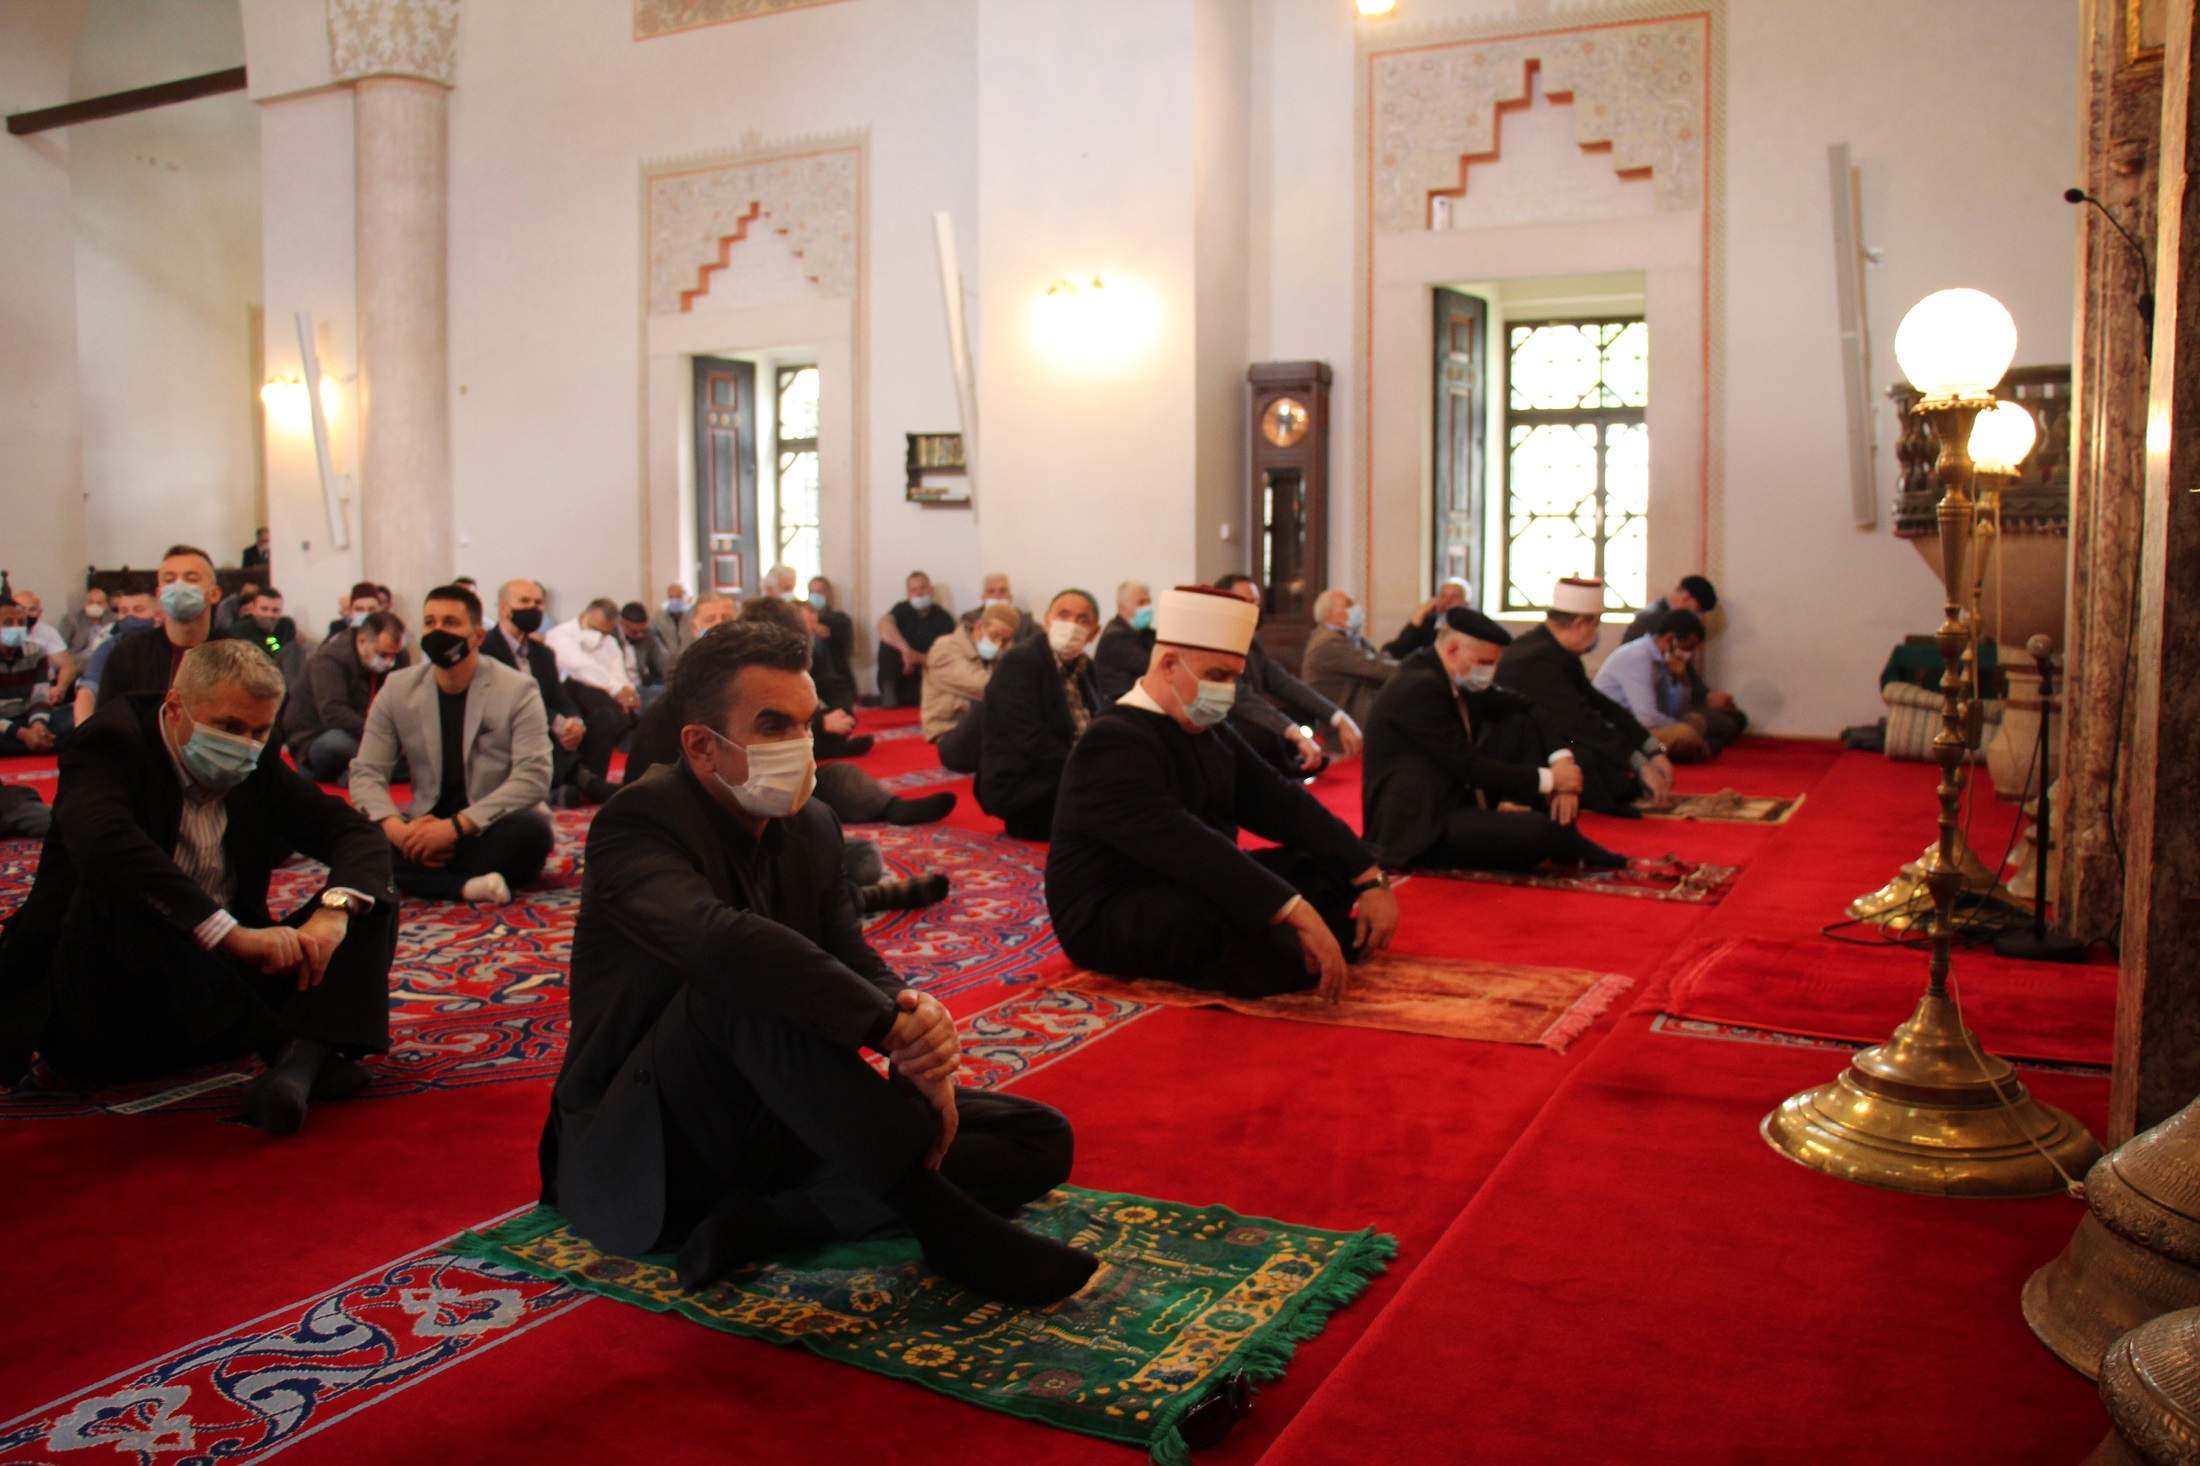 01 - Copy.jpg - Hutba povodom Dana džamija: Džamije su centri za uspjeh